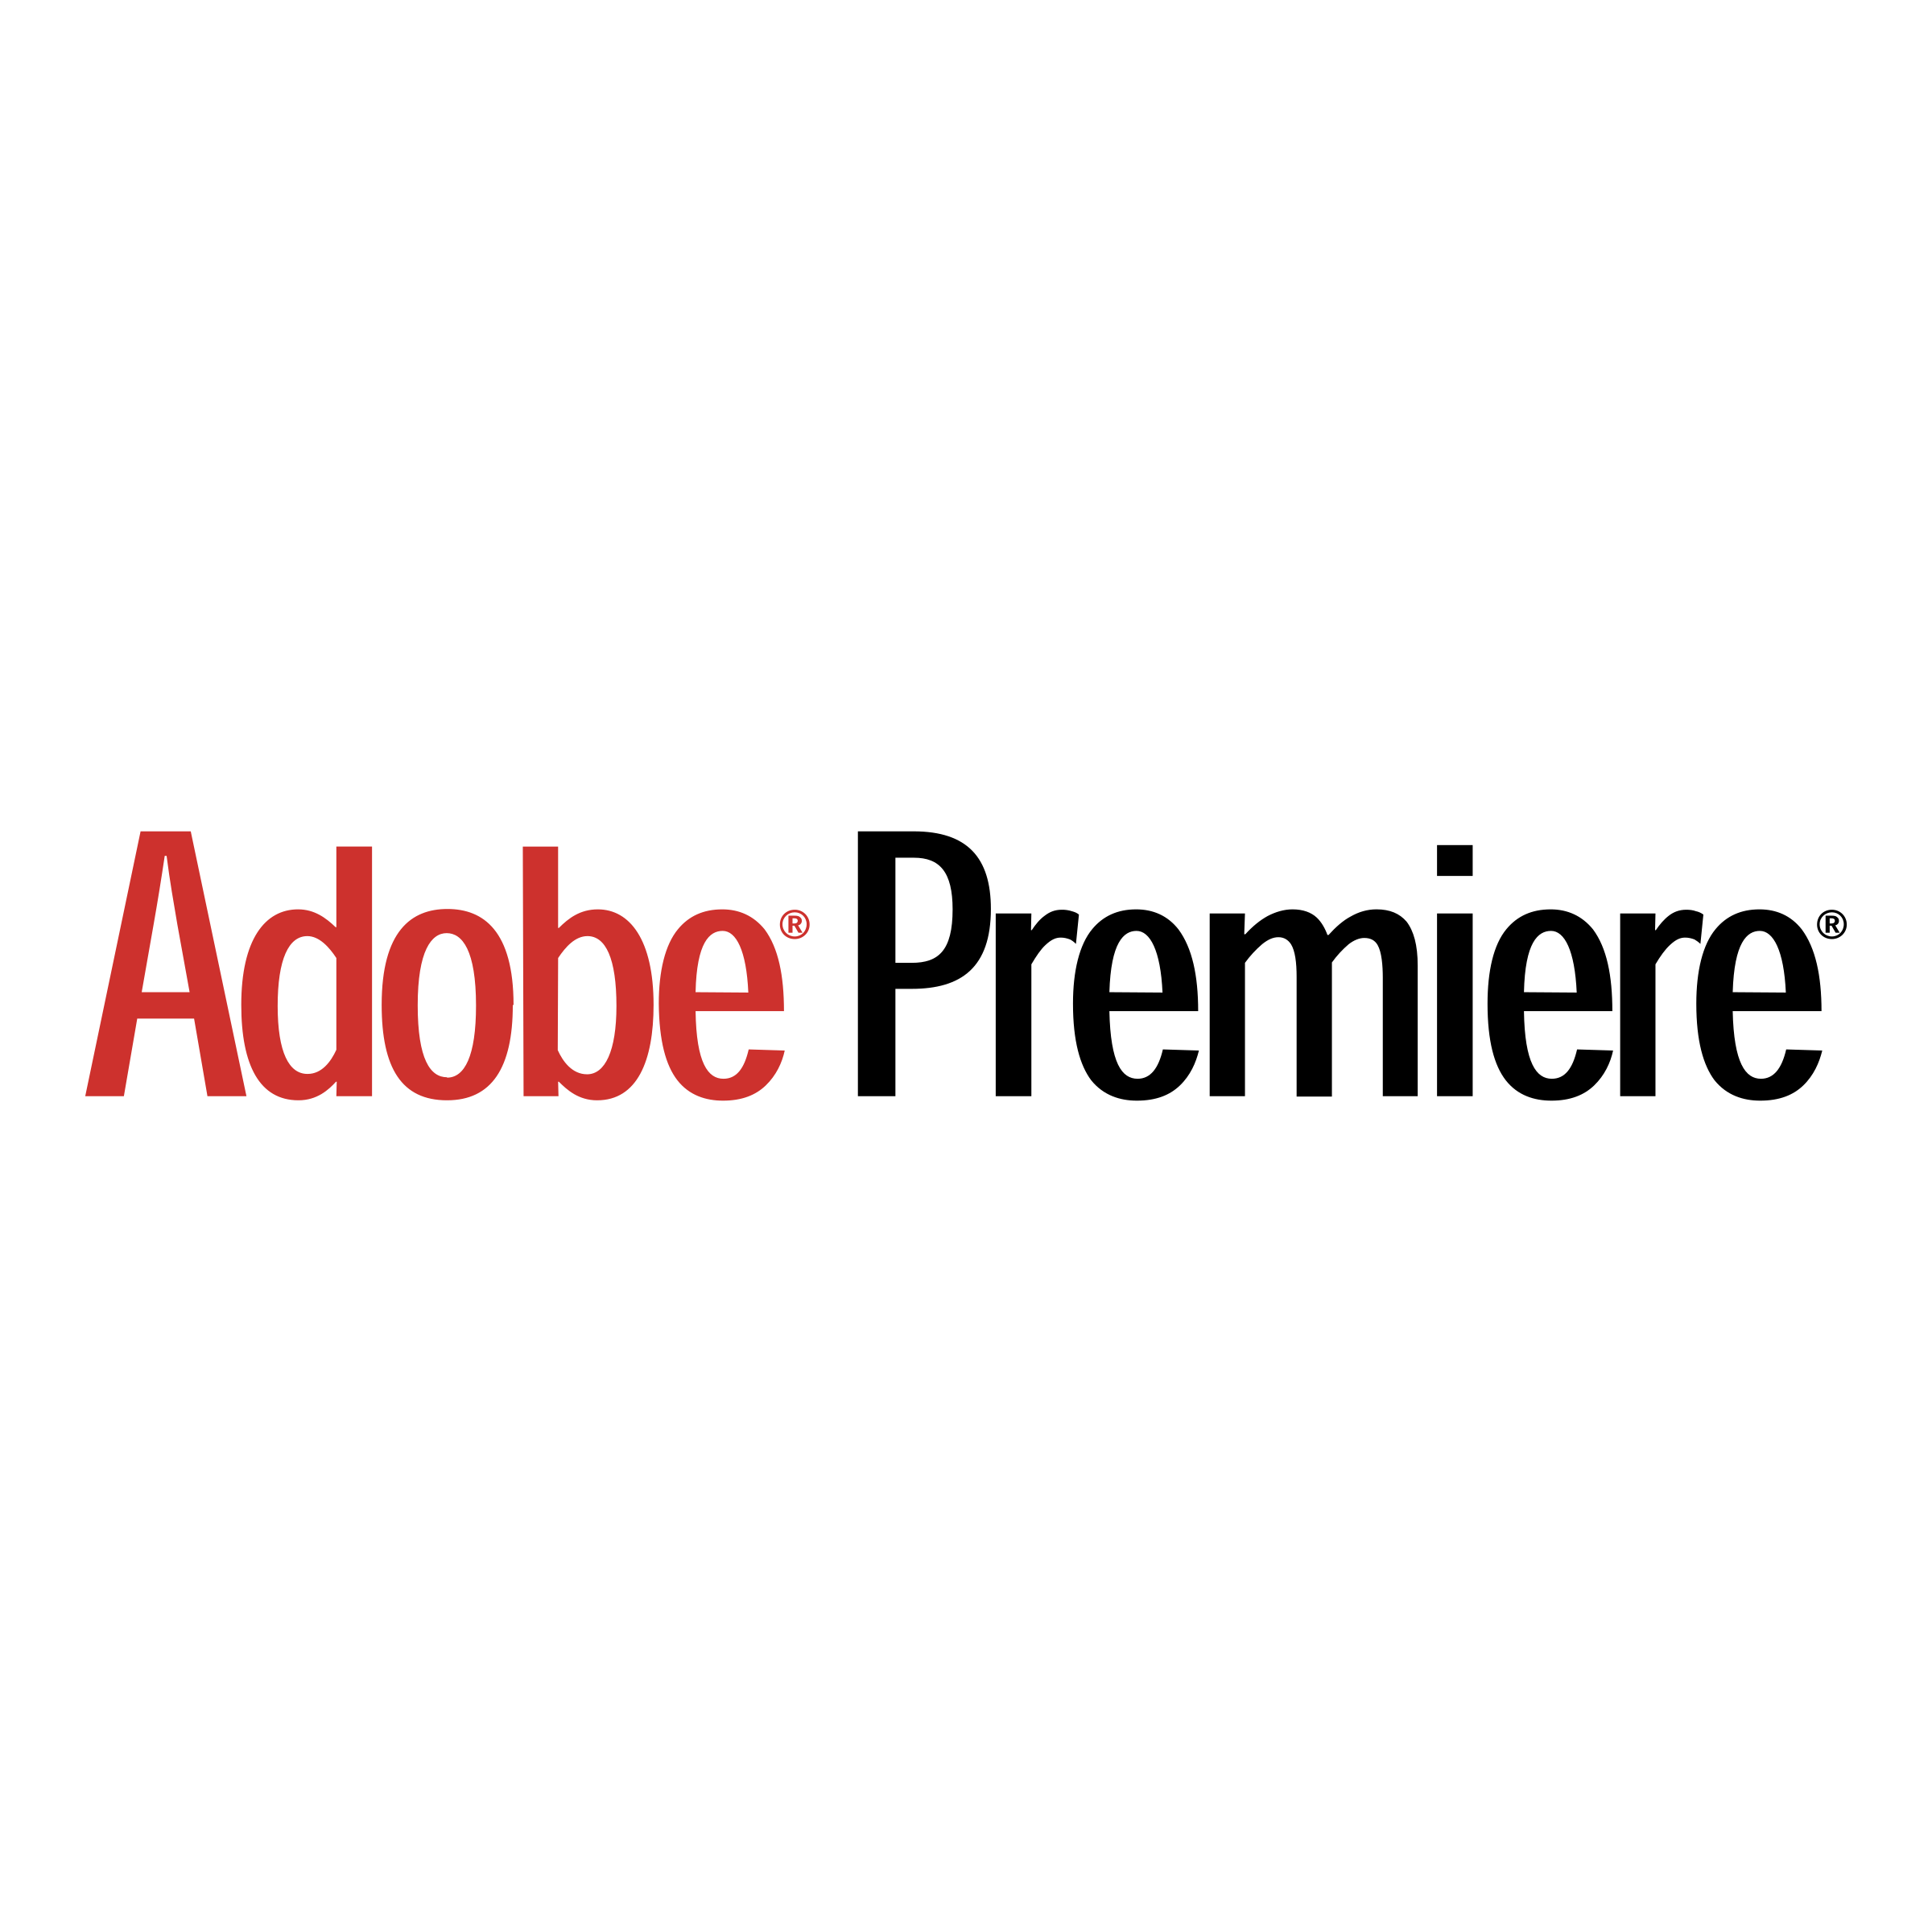 Adobe Premiere Logo PNG Transparent & SVG Vector.